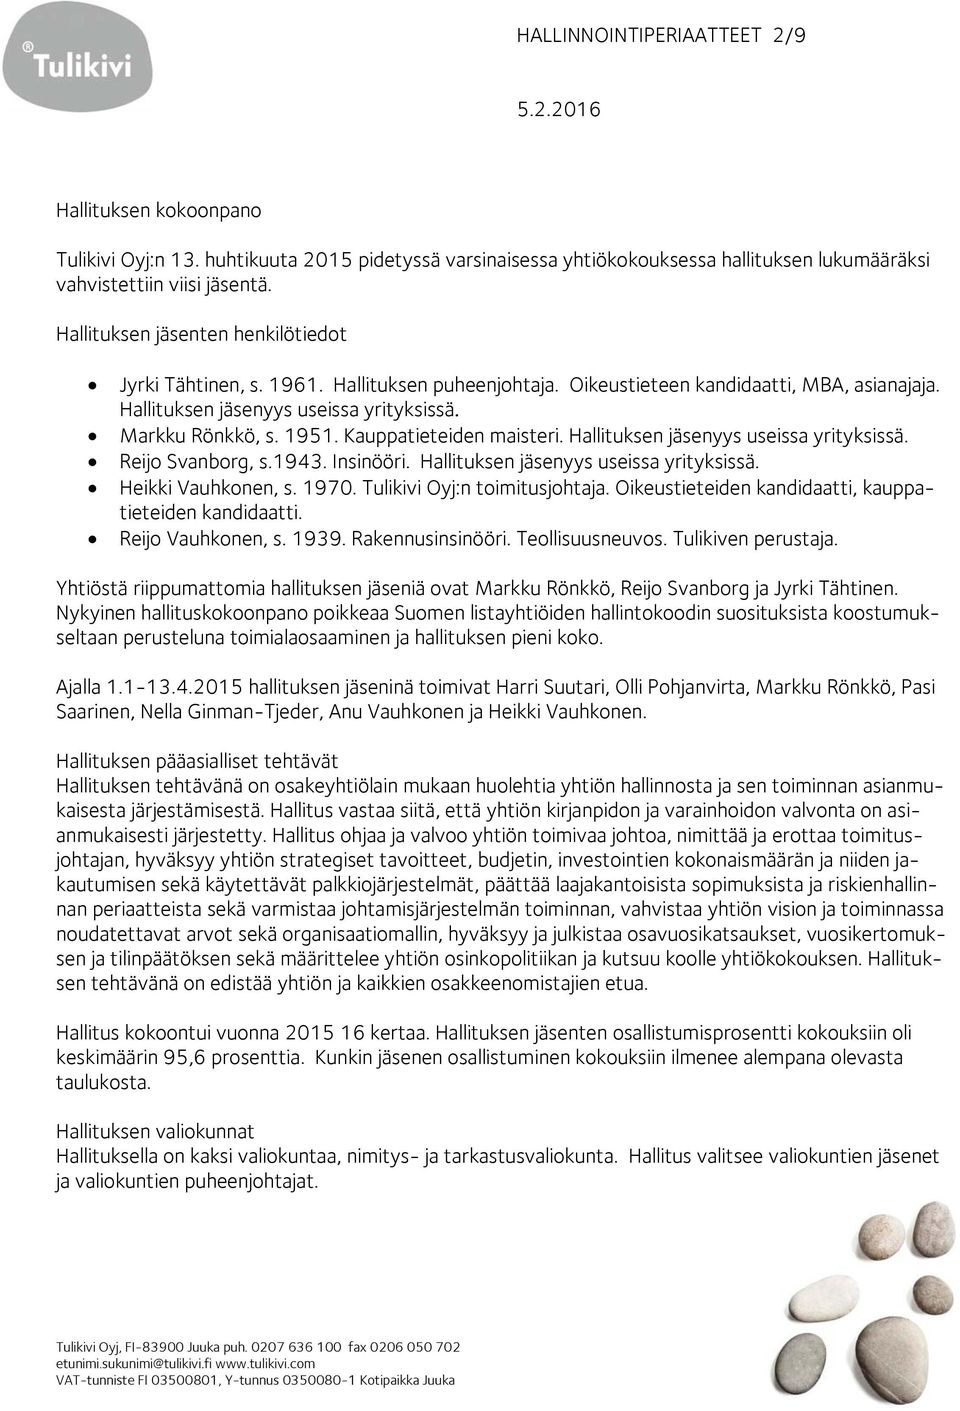 Kauppatieteiden maisteri. Hallituksen jäsenyys useissa yrityksissä. Reijo Svanborg, s.1943. Insinööri. Hallituksen jäsenyys useissa yrityksissä. Heikki Vauhkonen, s. 1970.